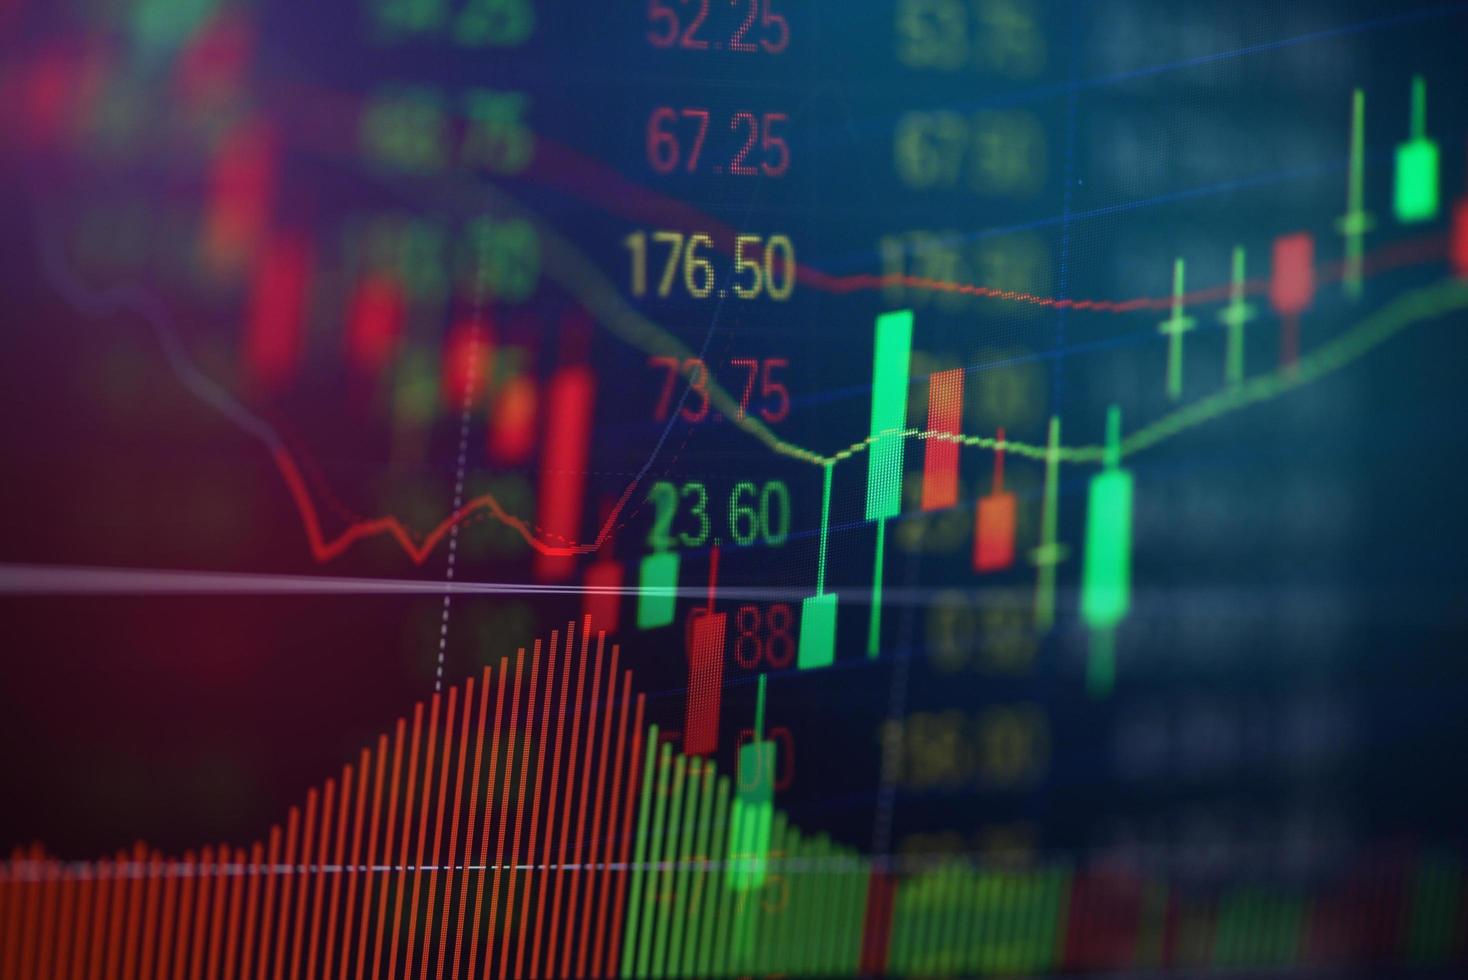 Börsenkurs-Grafikpreis mit Investitionen in den digitalen Finanzhintergrund des Unternehmens - Candle-Stick-Charts, Aktien- oder Forex-Handelsindikator auf dem Computermonitor für Investoren foto